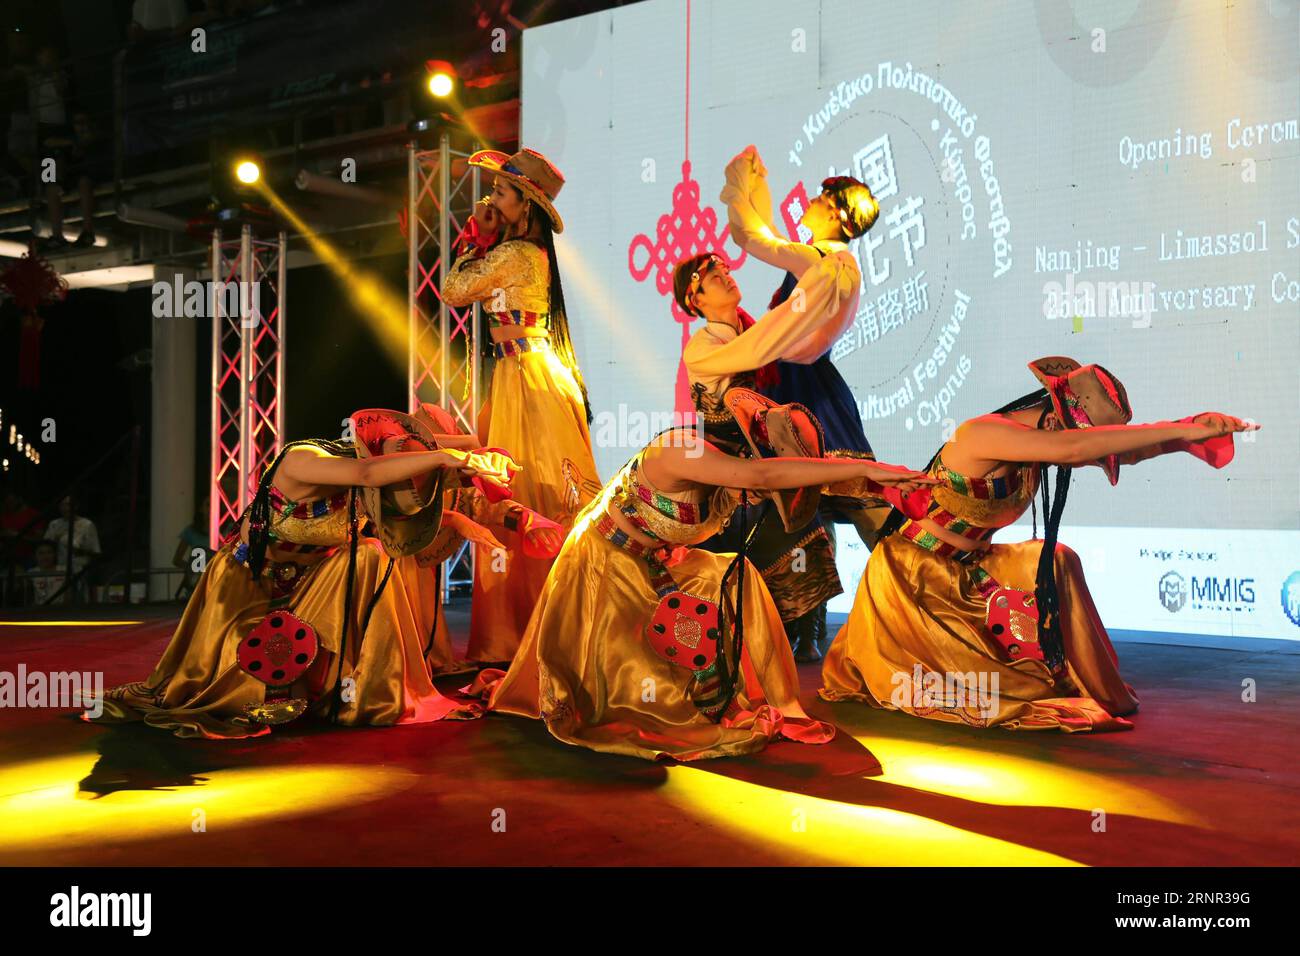 (170916) -- LIMASSOL, 16 septembre 2017 -- des danseurs chinois interprètent Love Song of Kang Ding lors de la cérémonie d'ouverture du premier Festival de la culture chinoise à Limassol, Chypre, le 15 septembre 2017. Le premier festival de la culture chinoise conçu pour célébrer le 25e anniversaire des liens entre la ville portuaire chypriote de Limassol et la ville chinoise de Nanjing vendredi a fasciné plus de 1 000 personnes à la populaire Marina de Limassol.) (Zjl) CYPRUS-LIMASSOL-CHINA-CULTURE FESTIVAL ZhangxZhang PUBLICATIONxNOTxINxCHN Banque D'Images